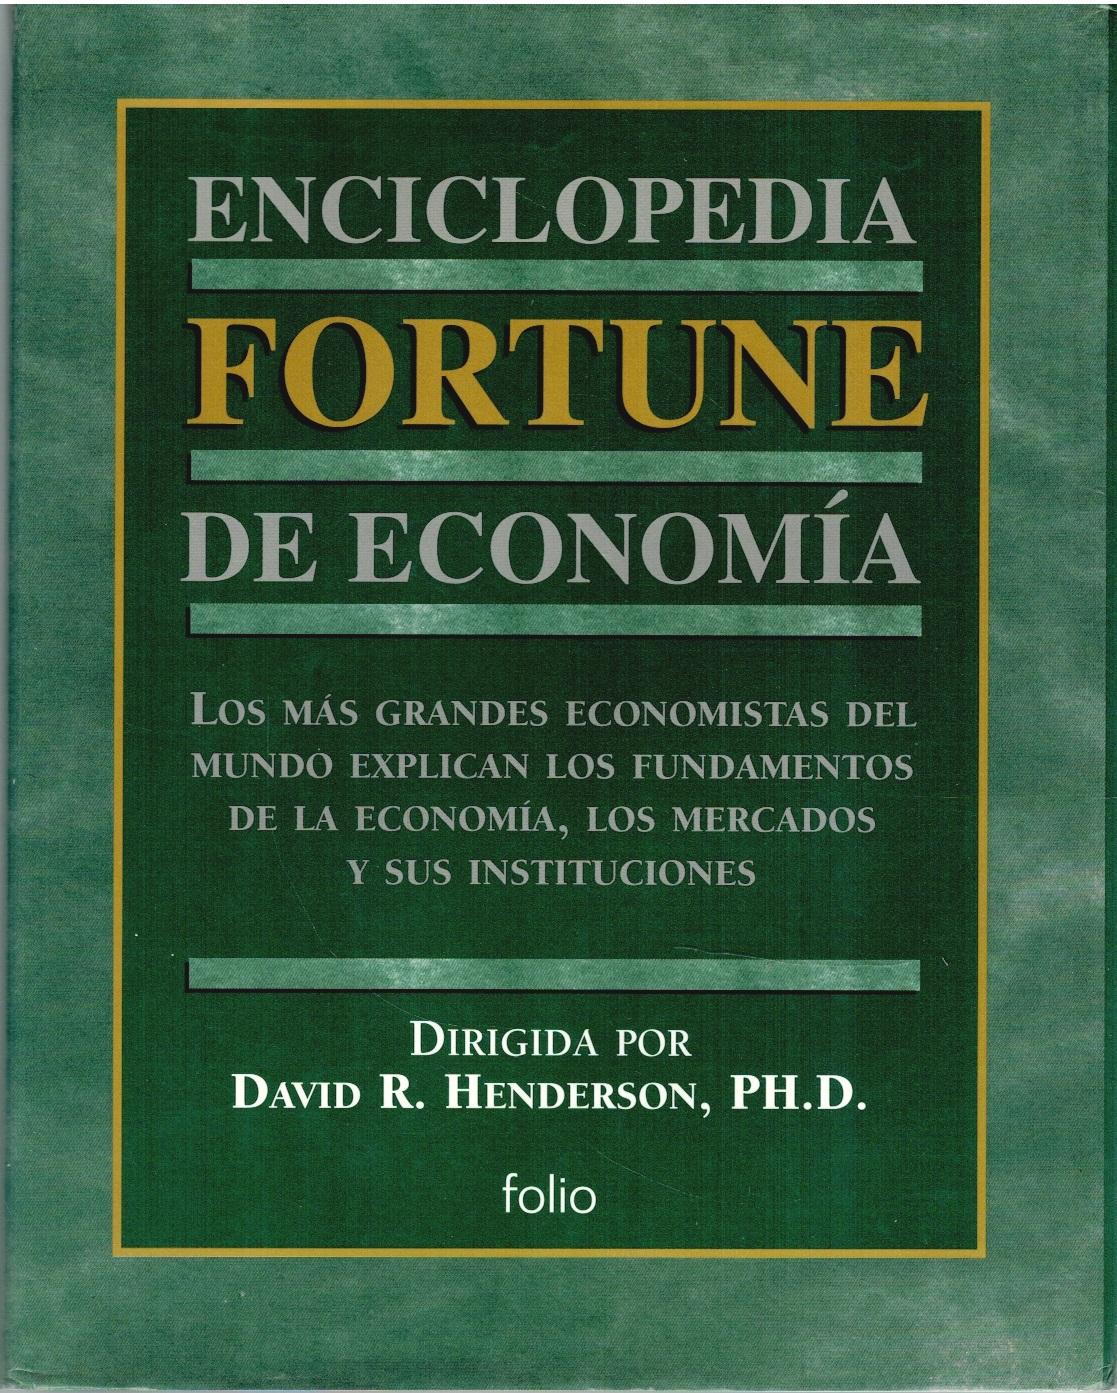 ENCICLOPEDIA FORTUNE DE ECONOMÍA - David R. Henderson